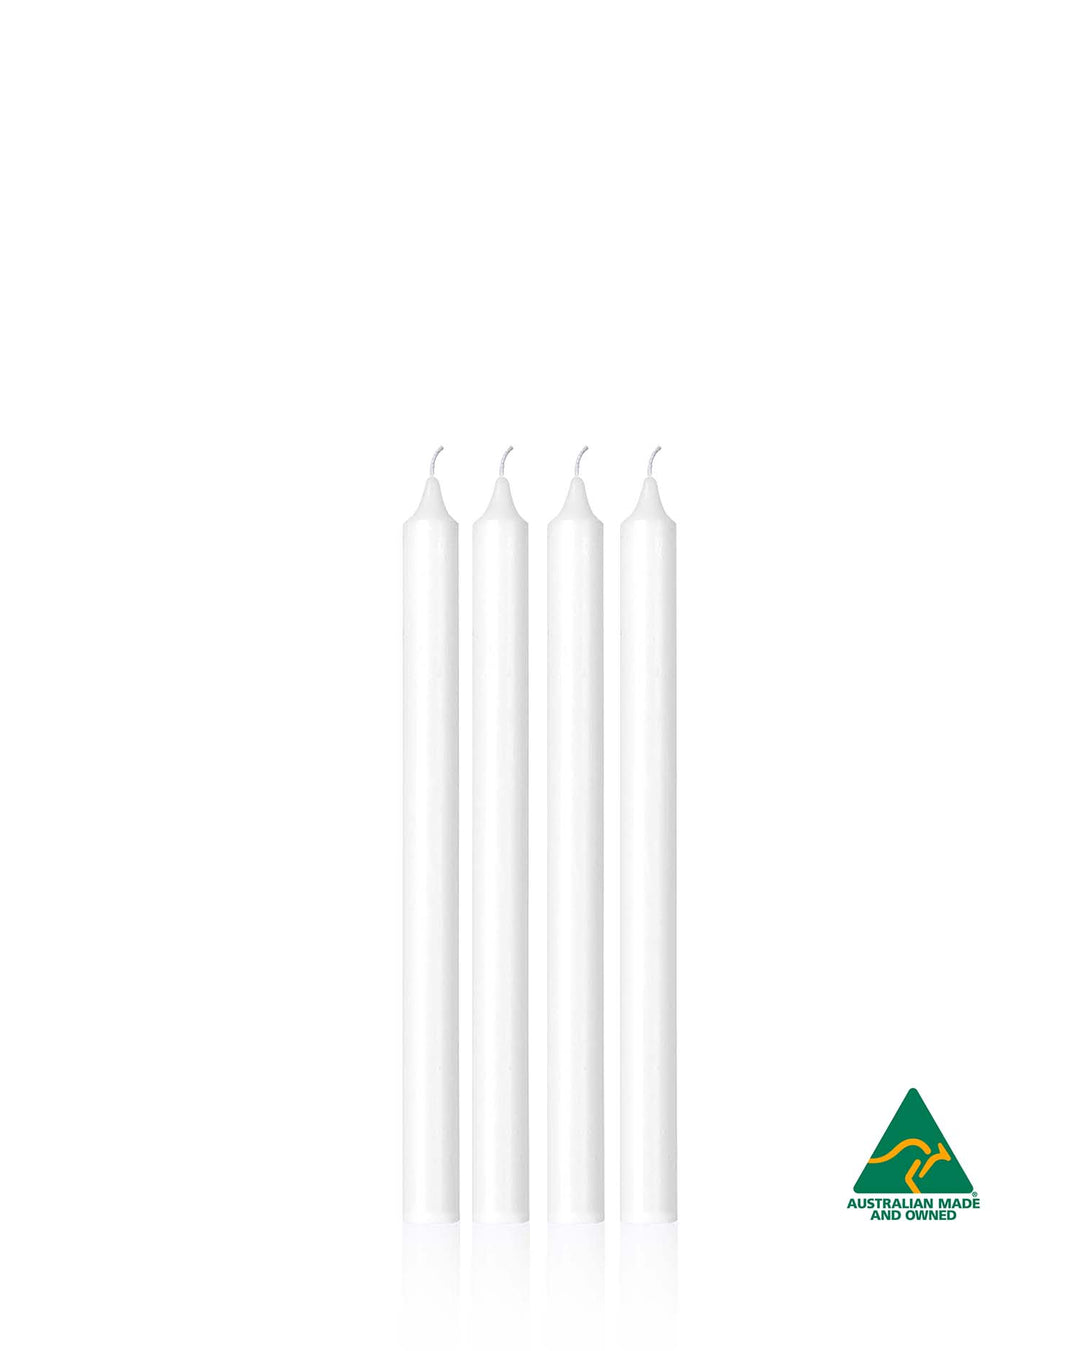 2cm x 27cm Candle (4pcs)